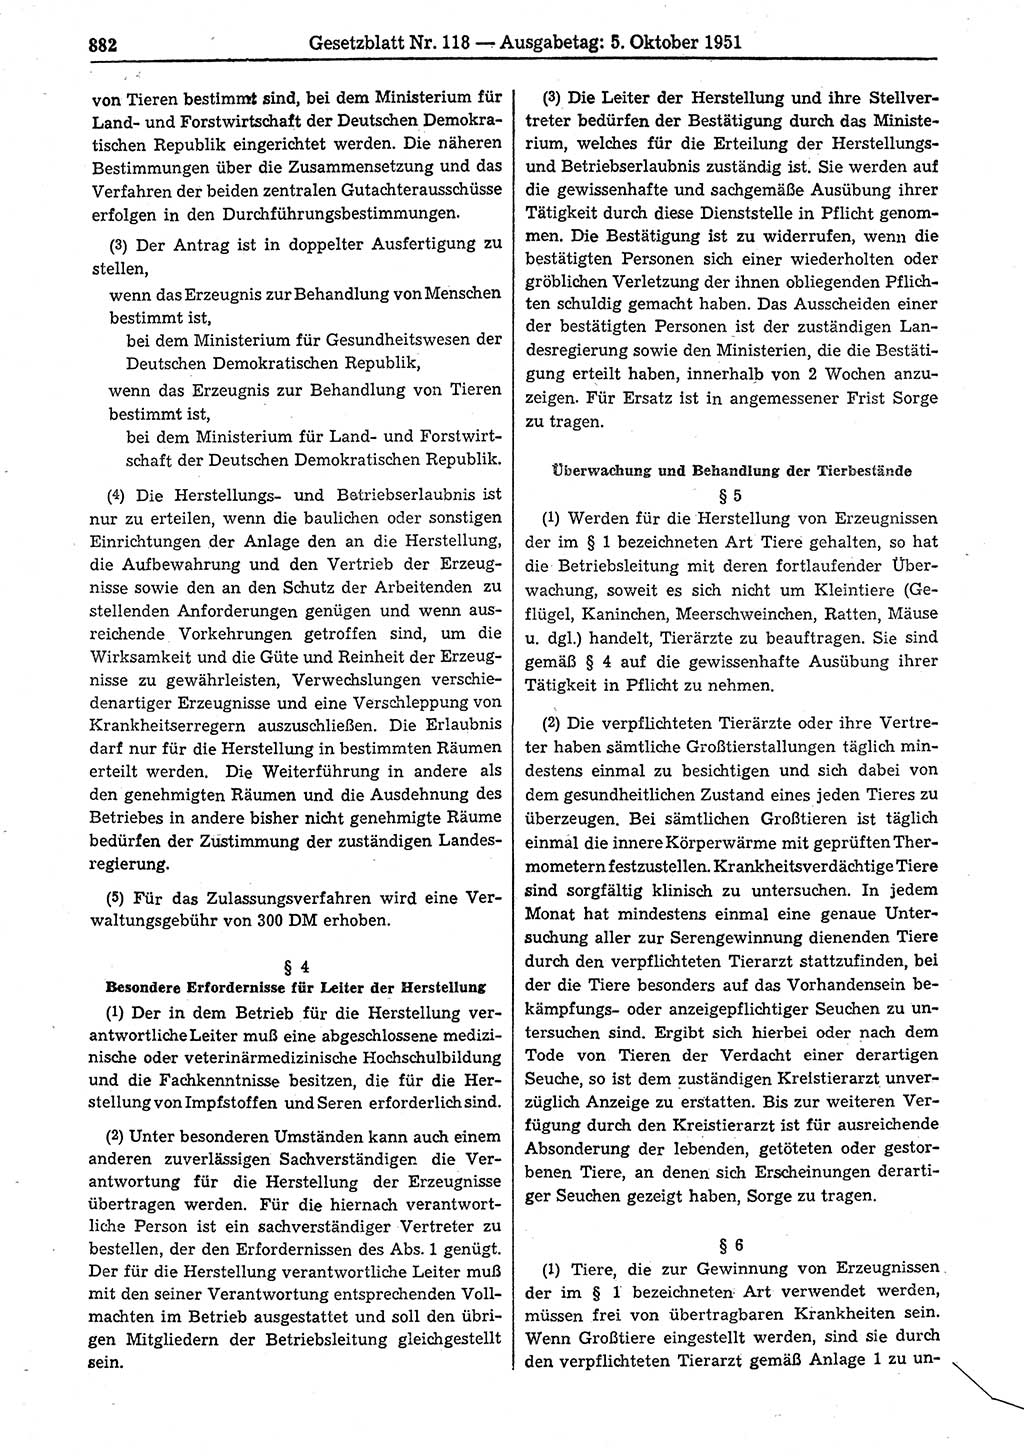 Gesetzblatt (GBl.) der Deutschen Demokratischen Republik (DDR) 1951, Seite 882 (GBl. DDR 1951, S. 882)